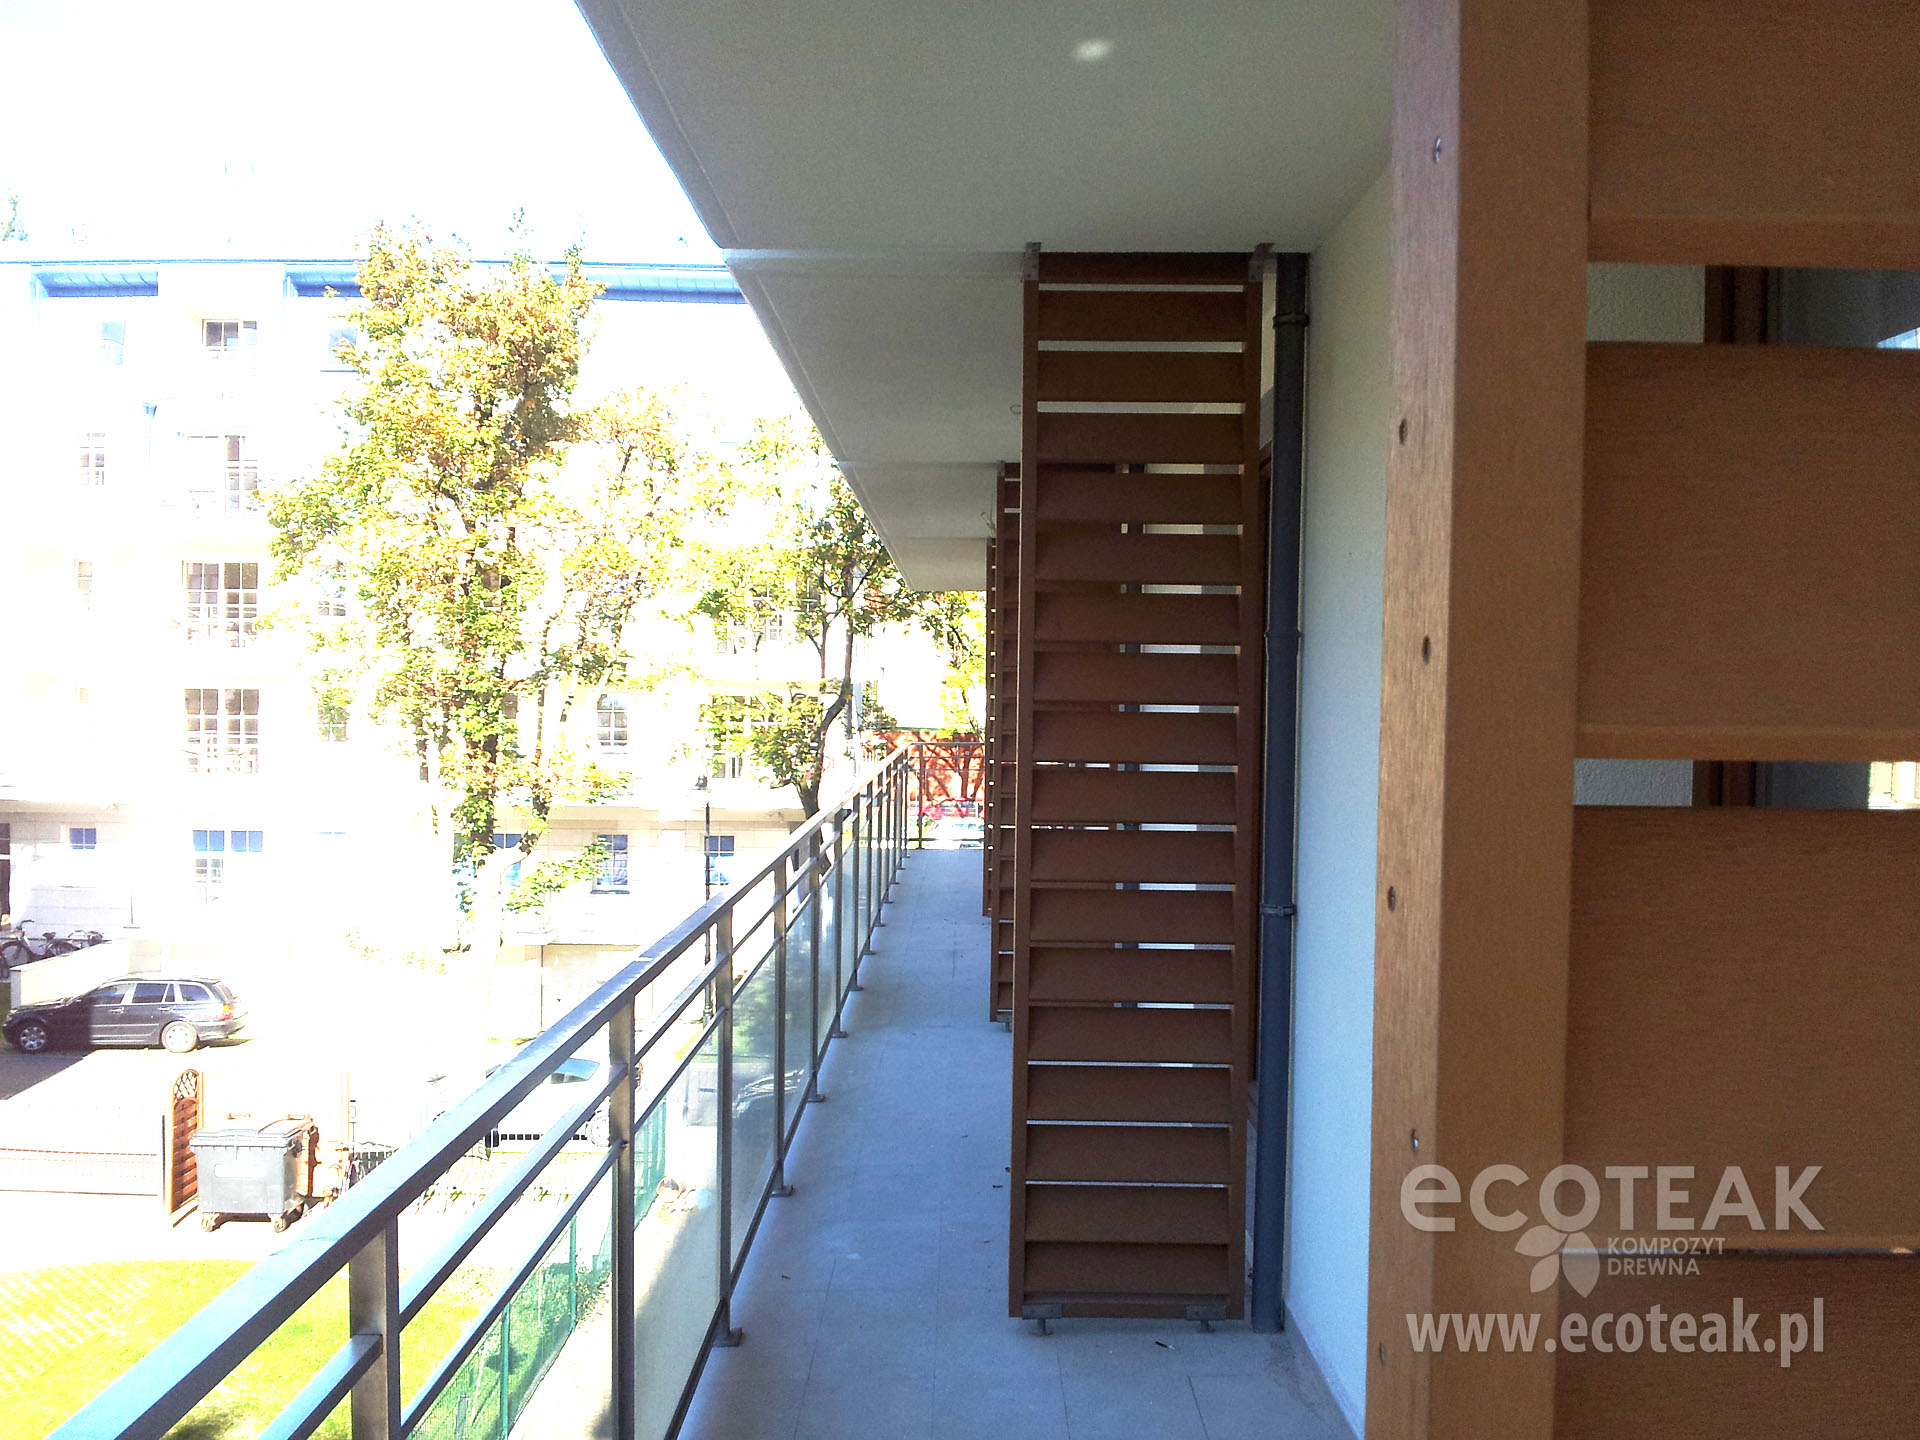 Przegrody balkonowe z kompozytów drewna EcoTeak